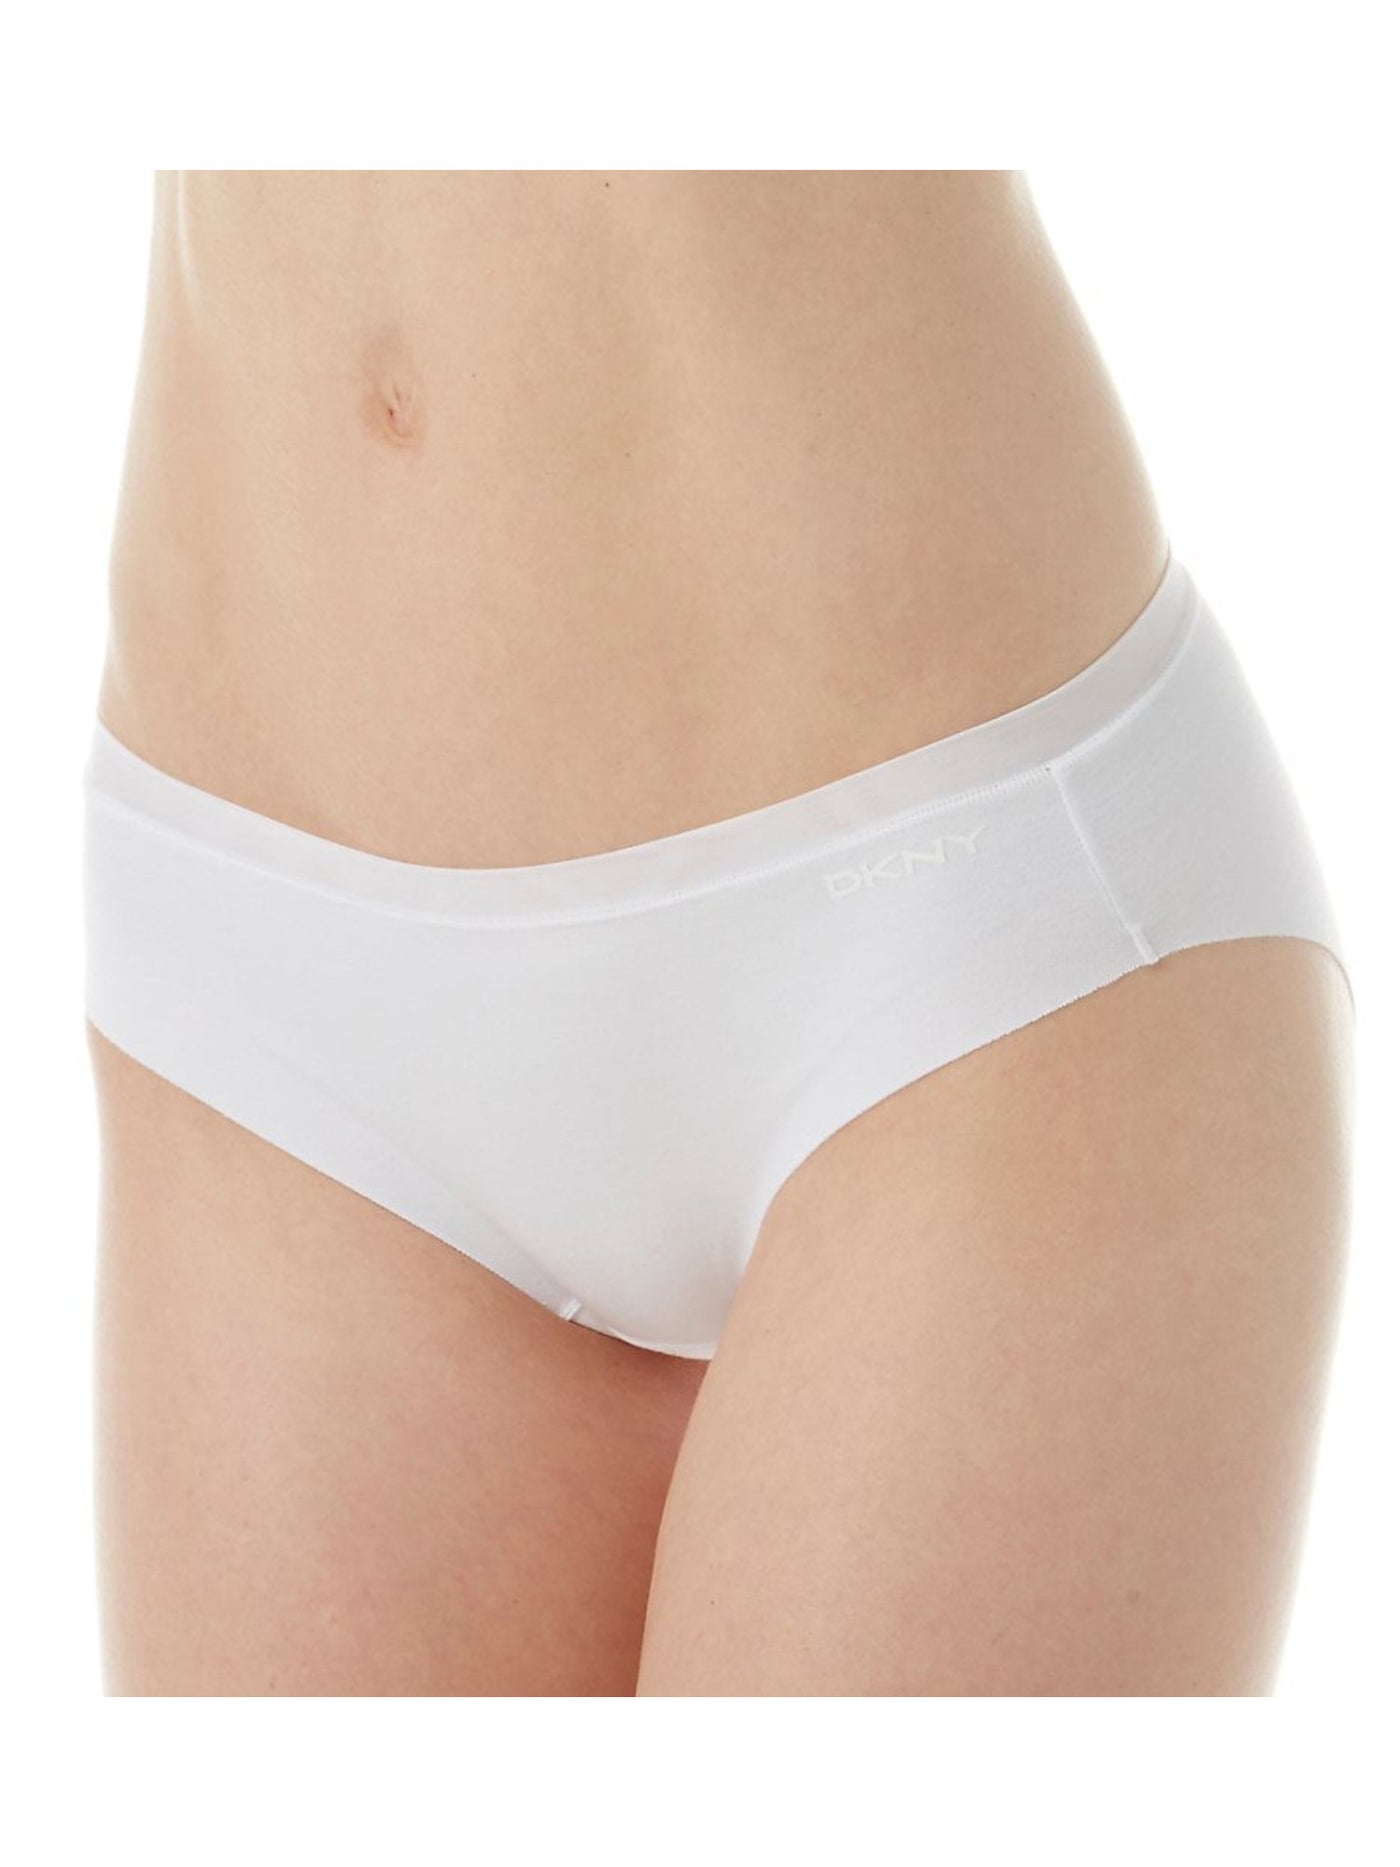 DKNY Intimates White Bikini Underwear XL